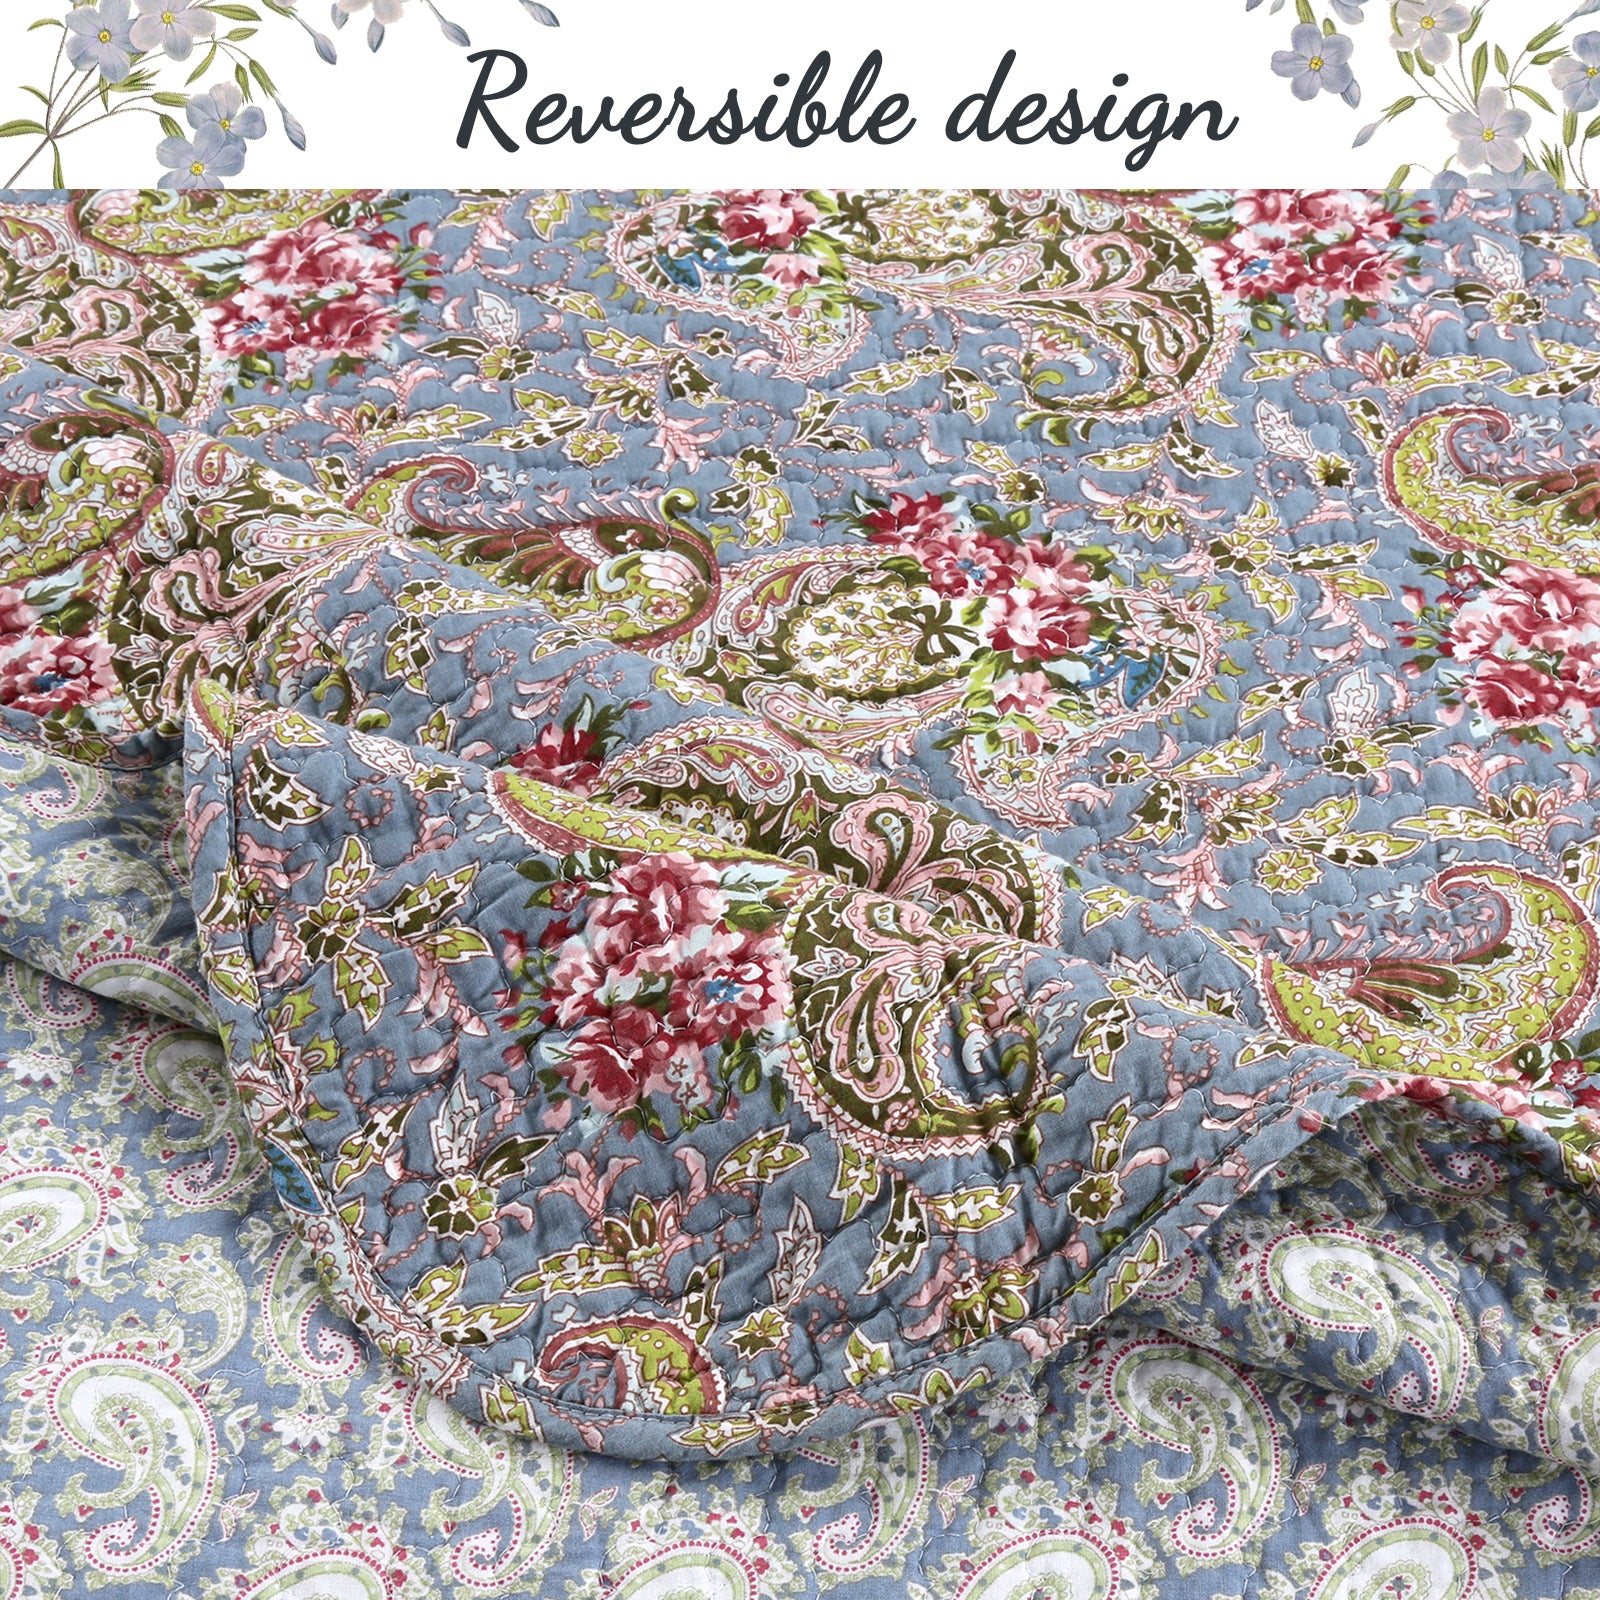 Floral Paisley Blue Cotton 3-Piece Reversible Quilt Bedding Set – Cozy Line  Home Fashions